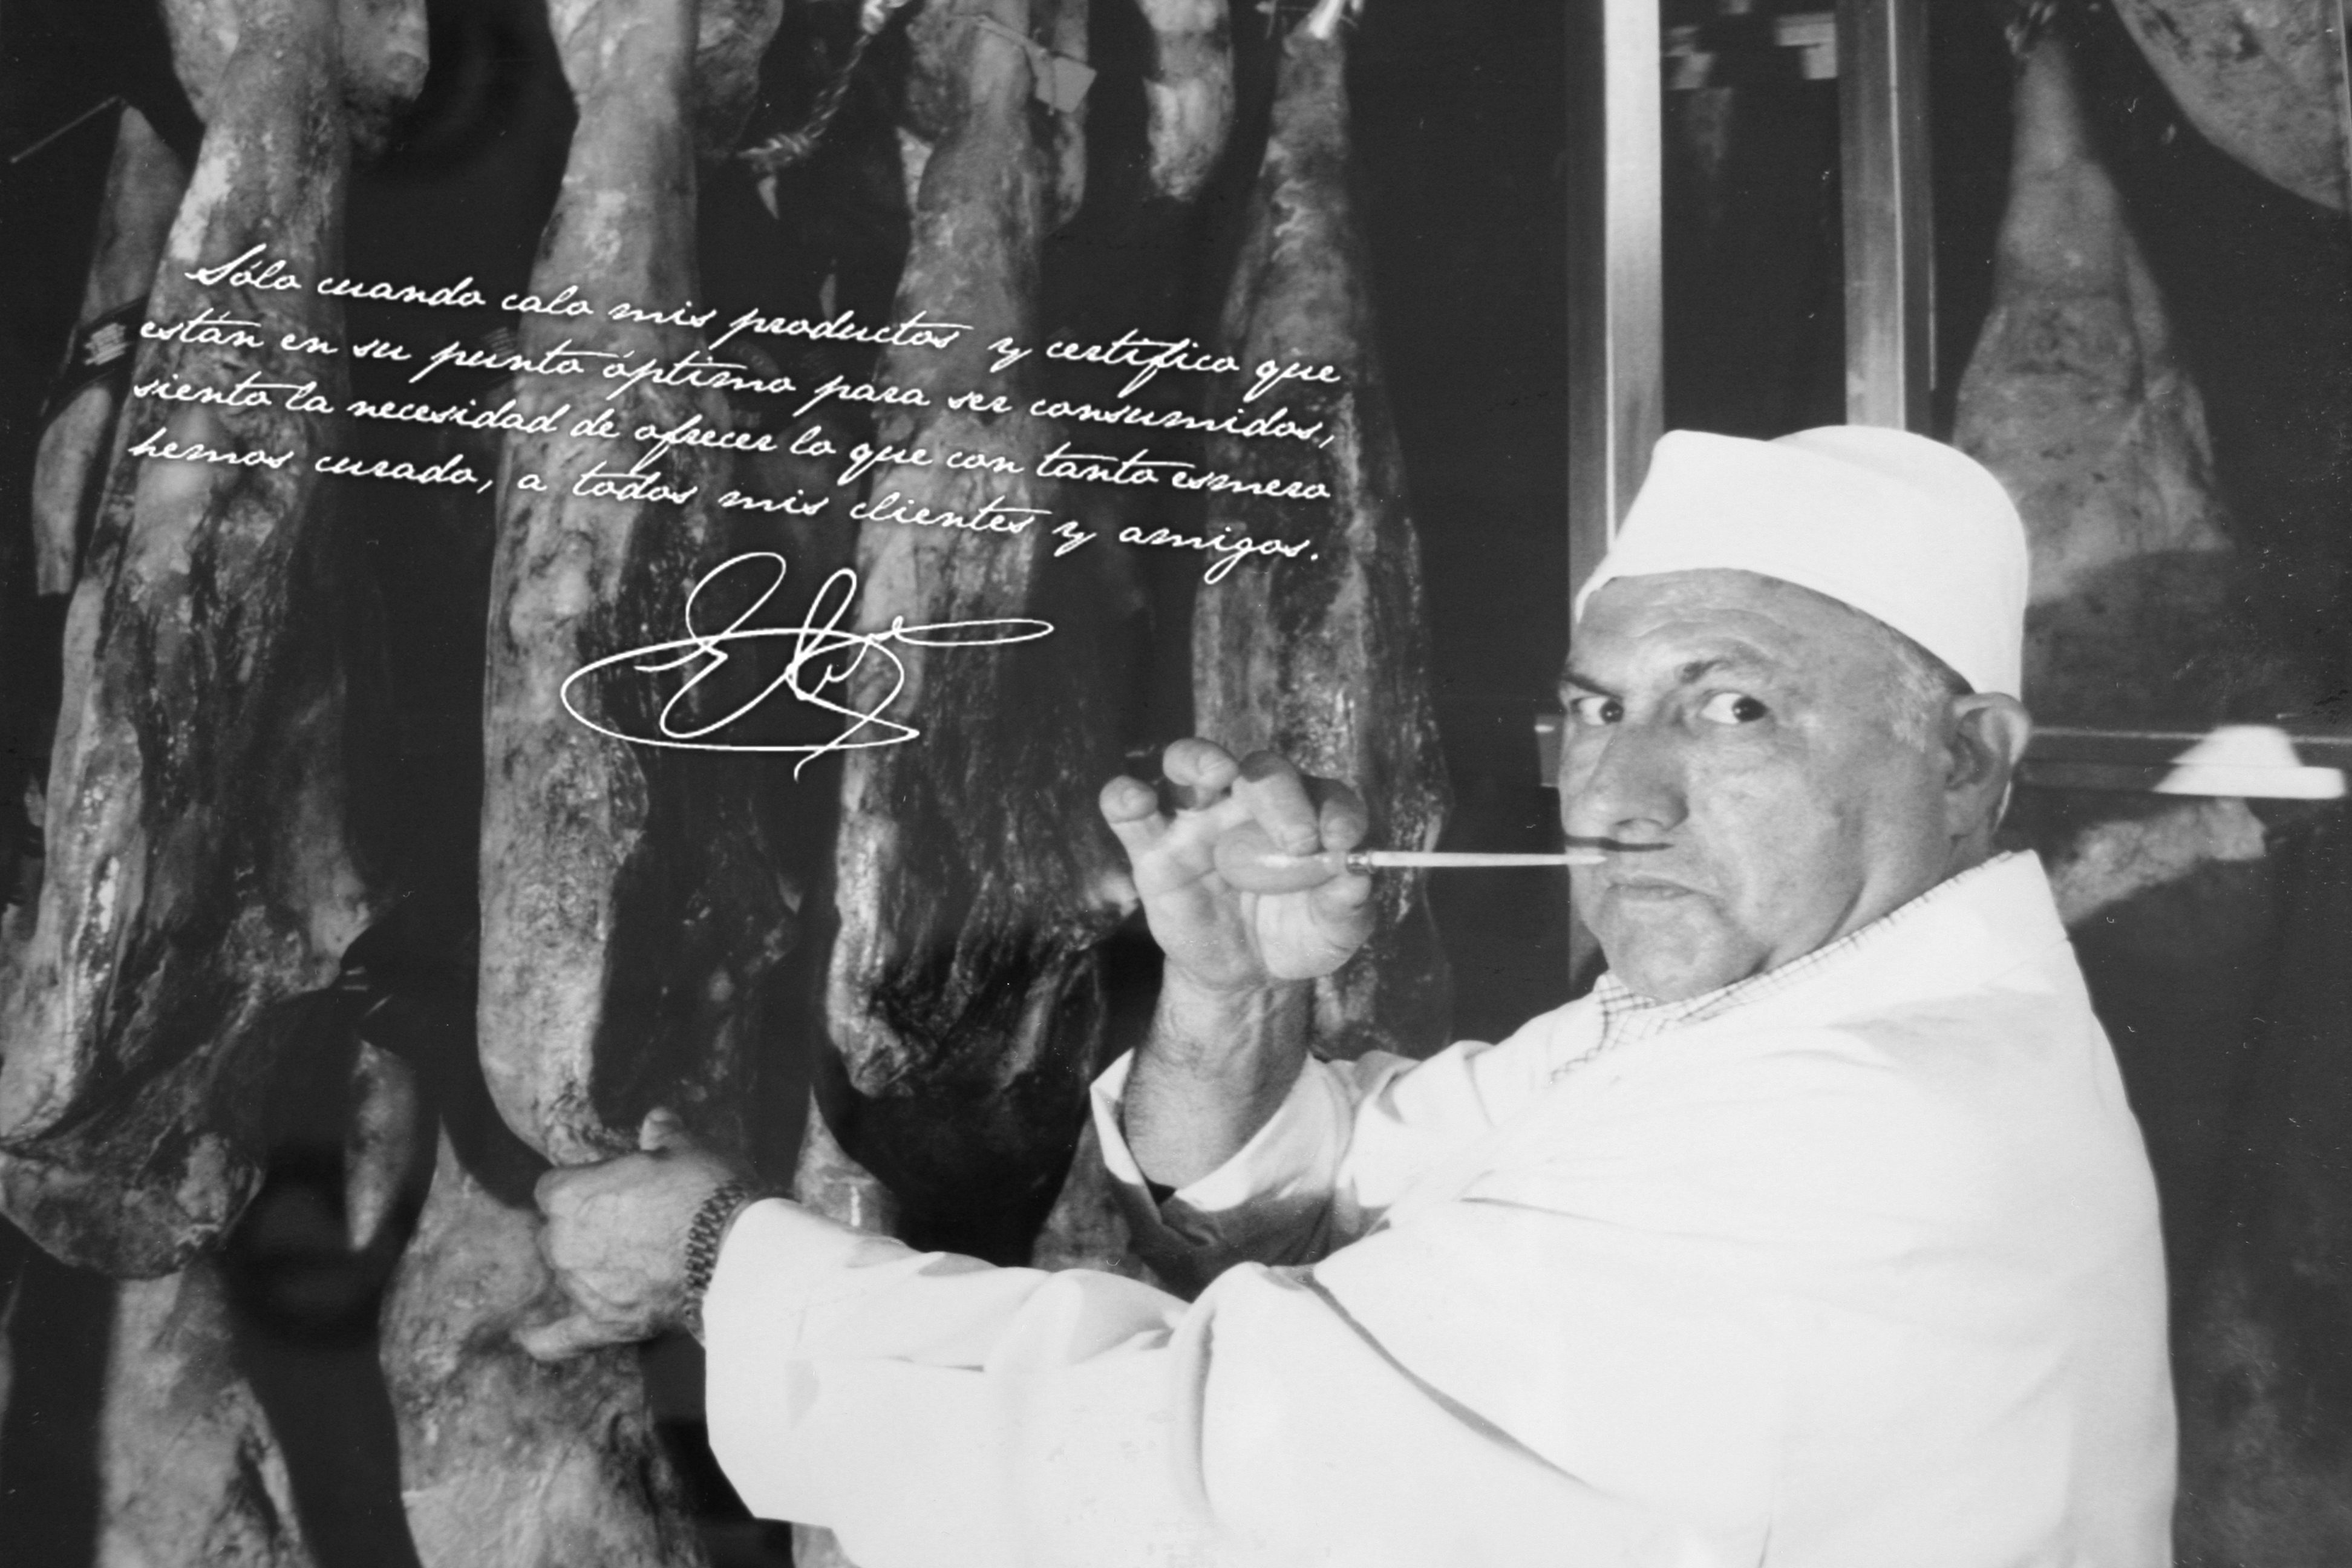 Foto en blanco y negro de Elier Ballesteros padre con su mensaje y firma